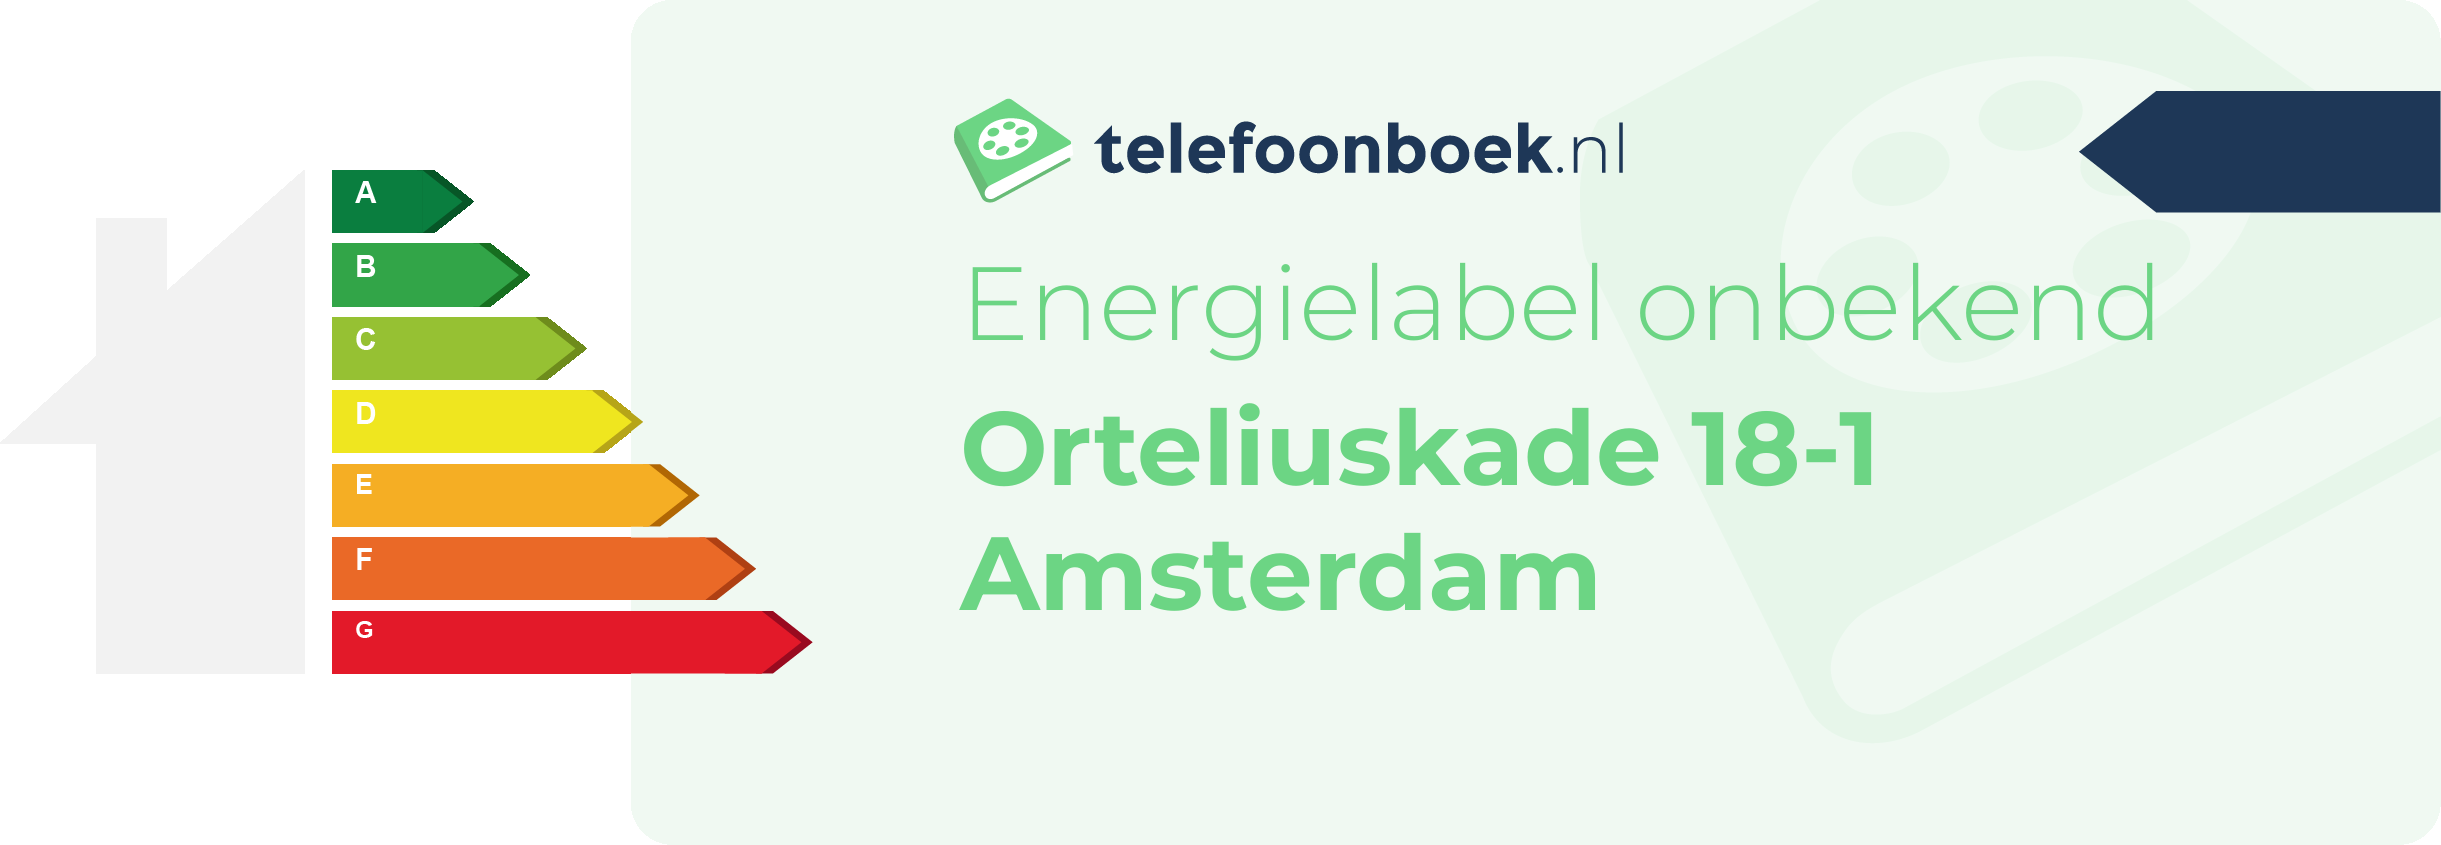 Energielabel Orteliuskade 18-1 Amsterdam